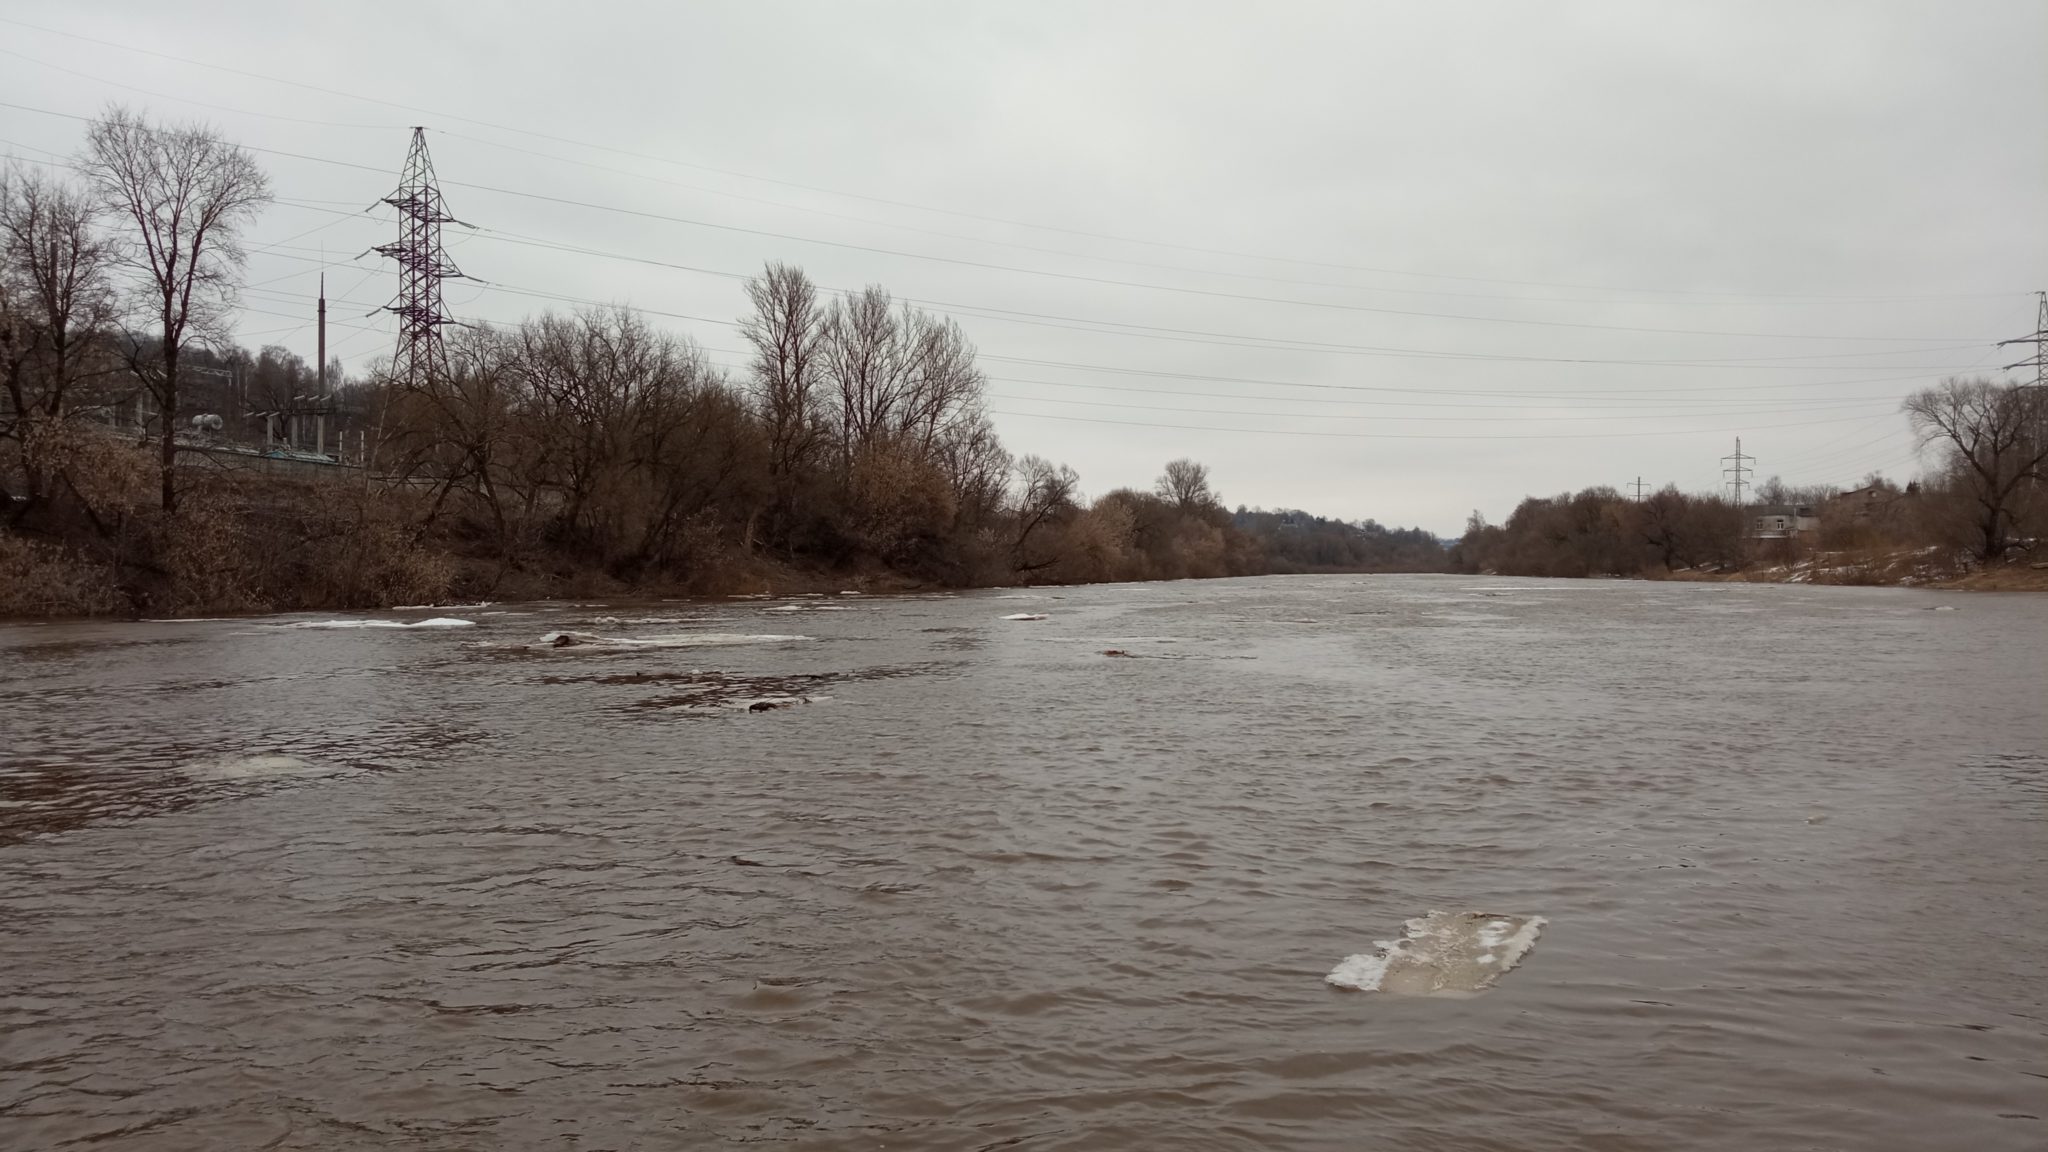 река днепр украина